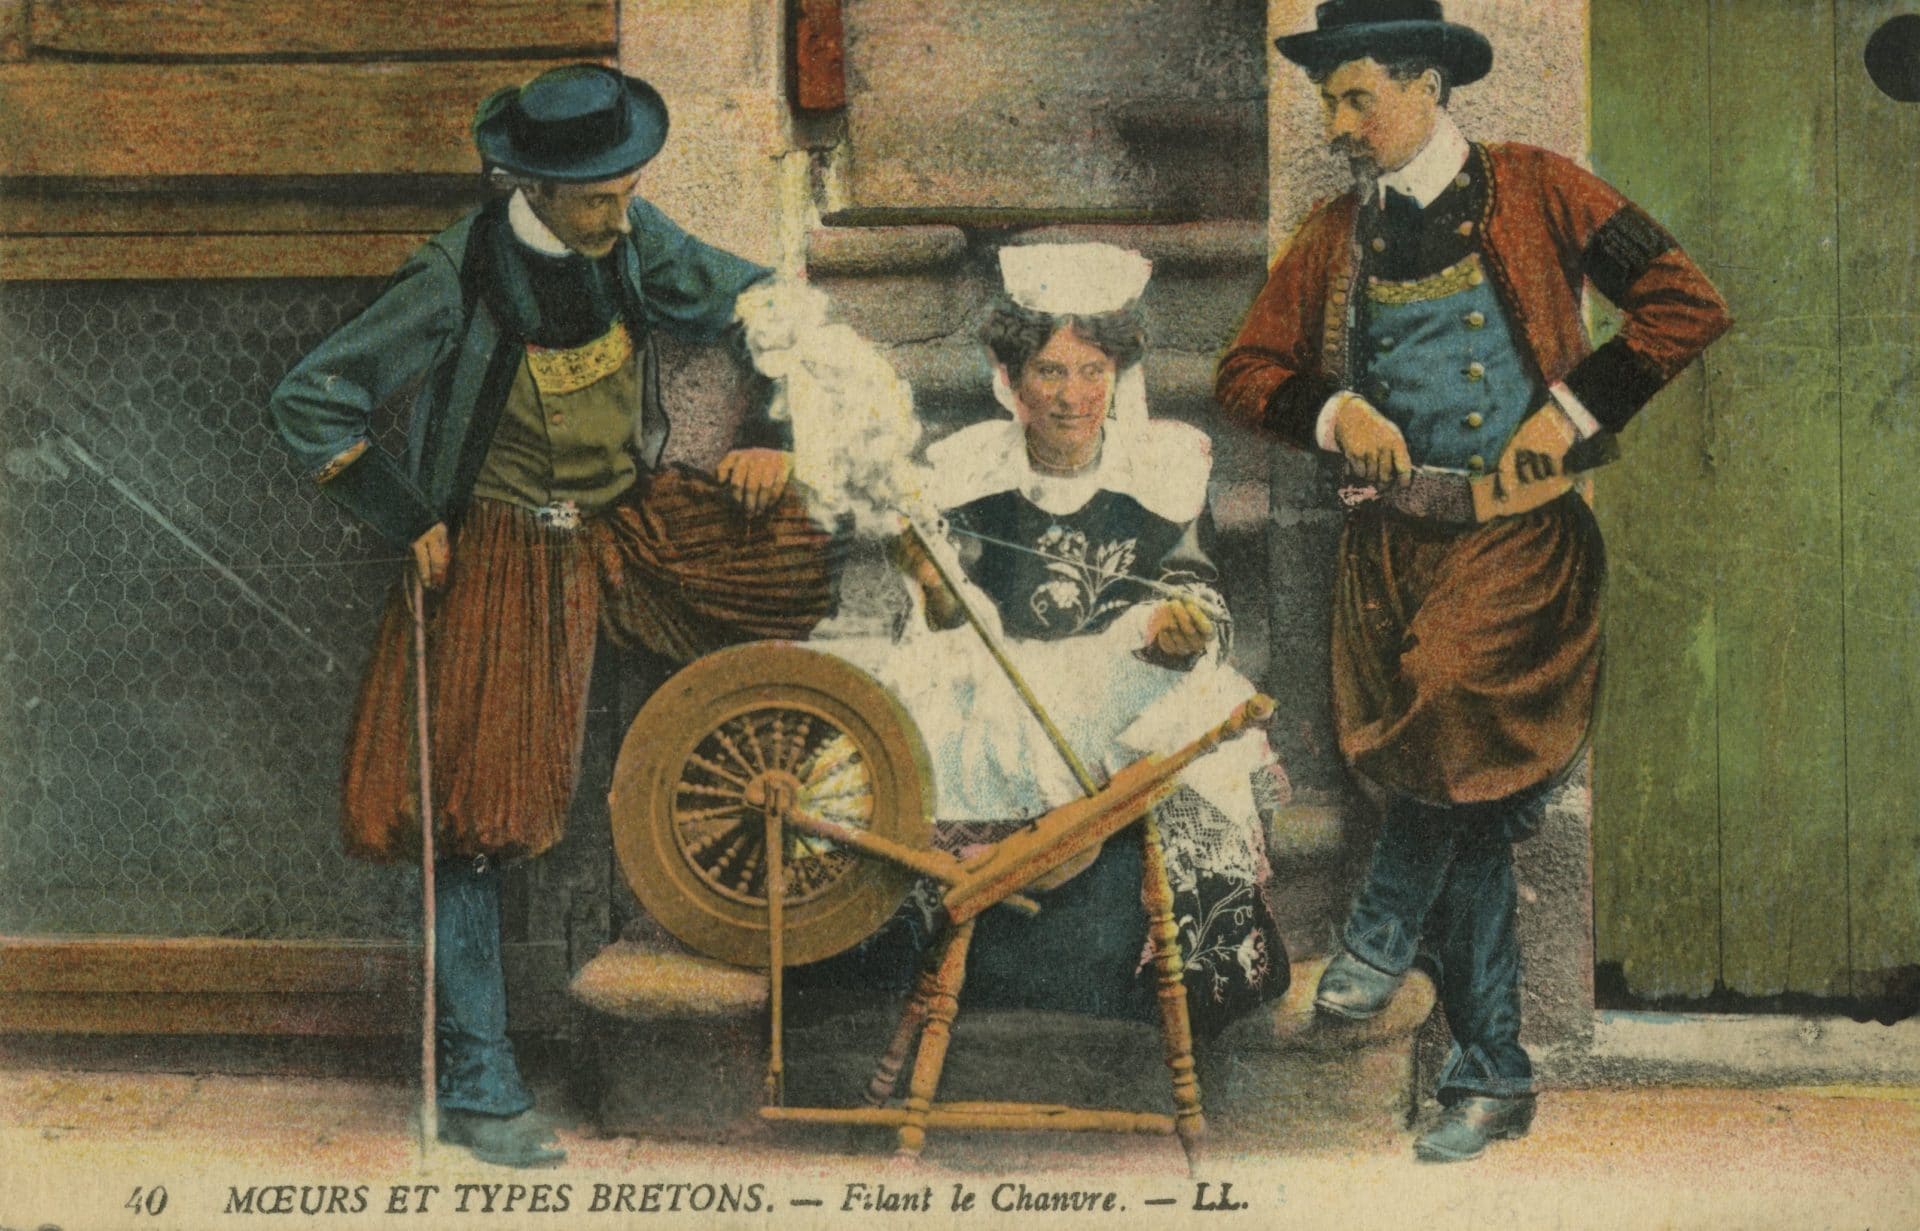 “Moeurs Et Types Bretons – filant le chanvre”, carte postale française, 1910.